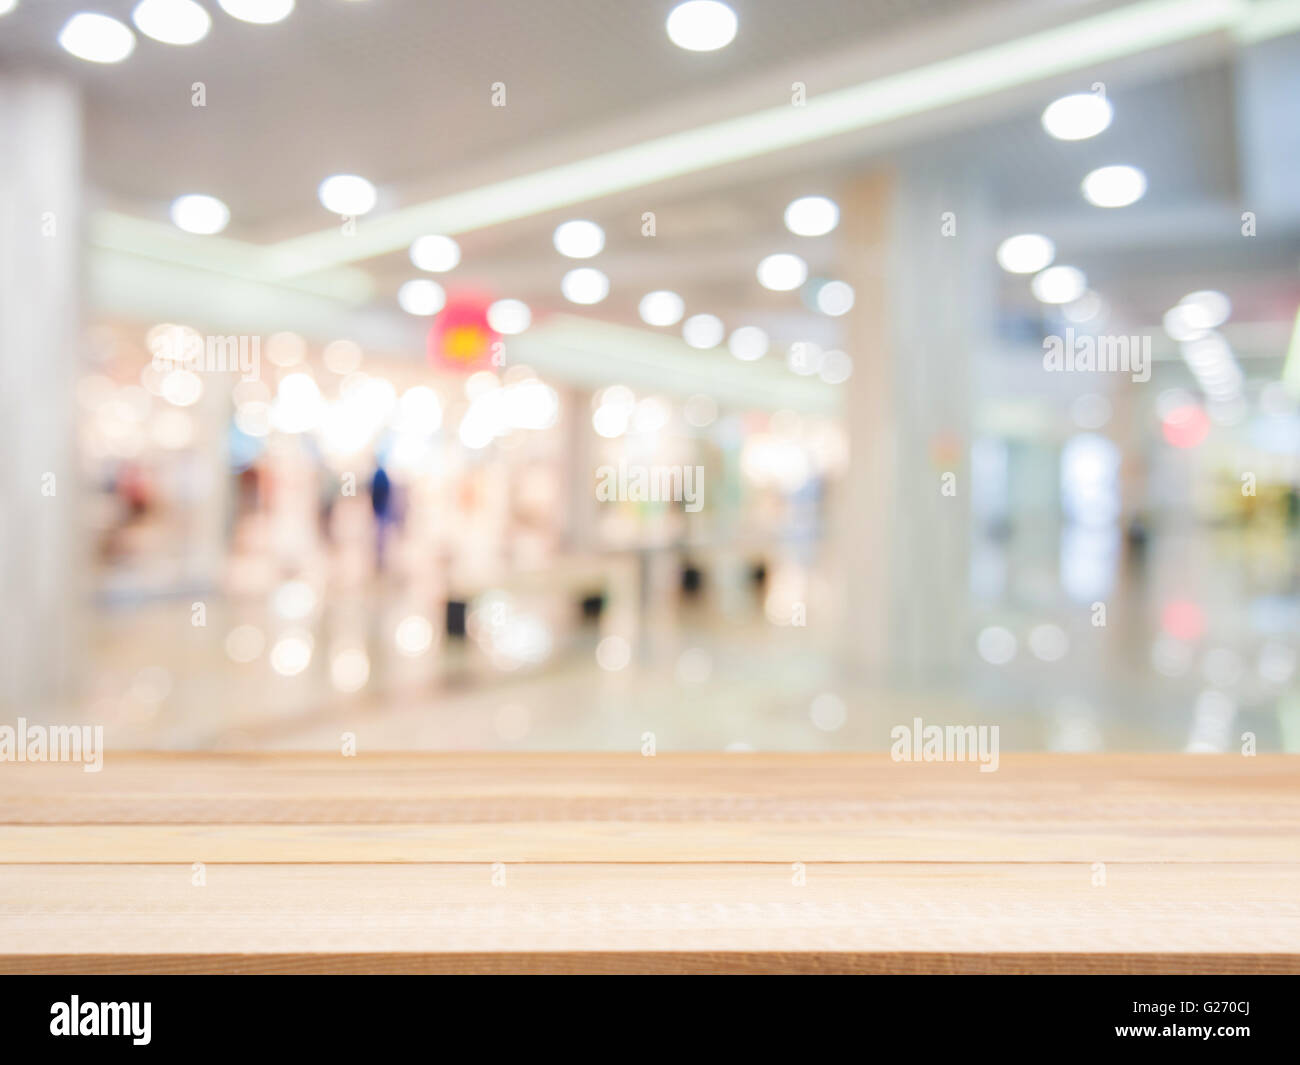 Placa de madera tabla vacía delante de fondo borroso. Perspectiva sobre madera ligera borrosidad en shopping mall - puede utilizarse para dis Foto de stock